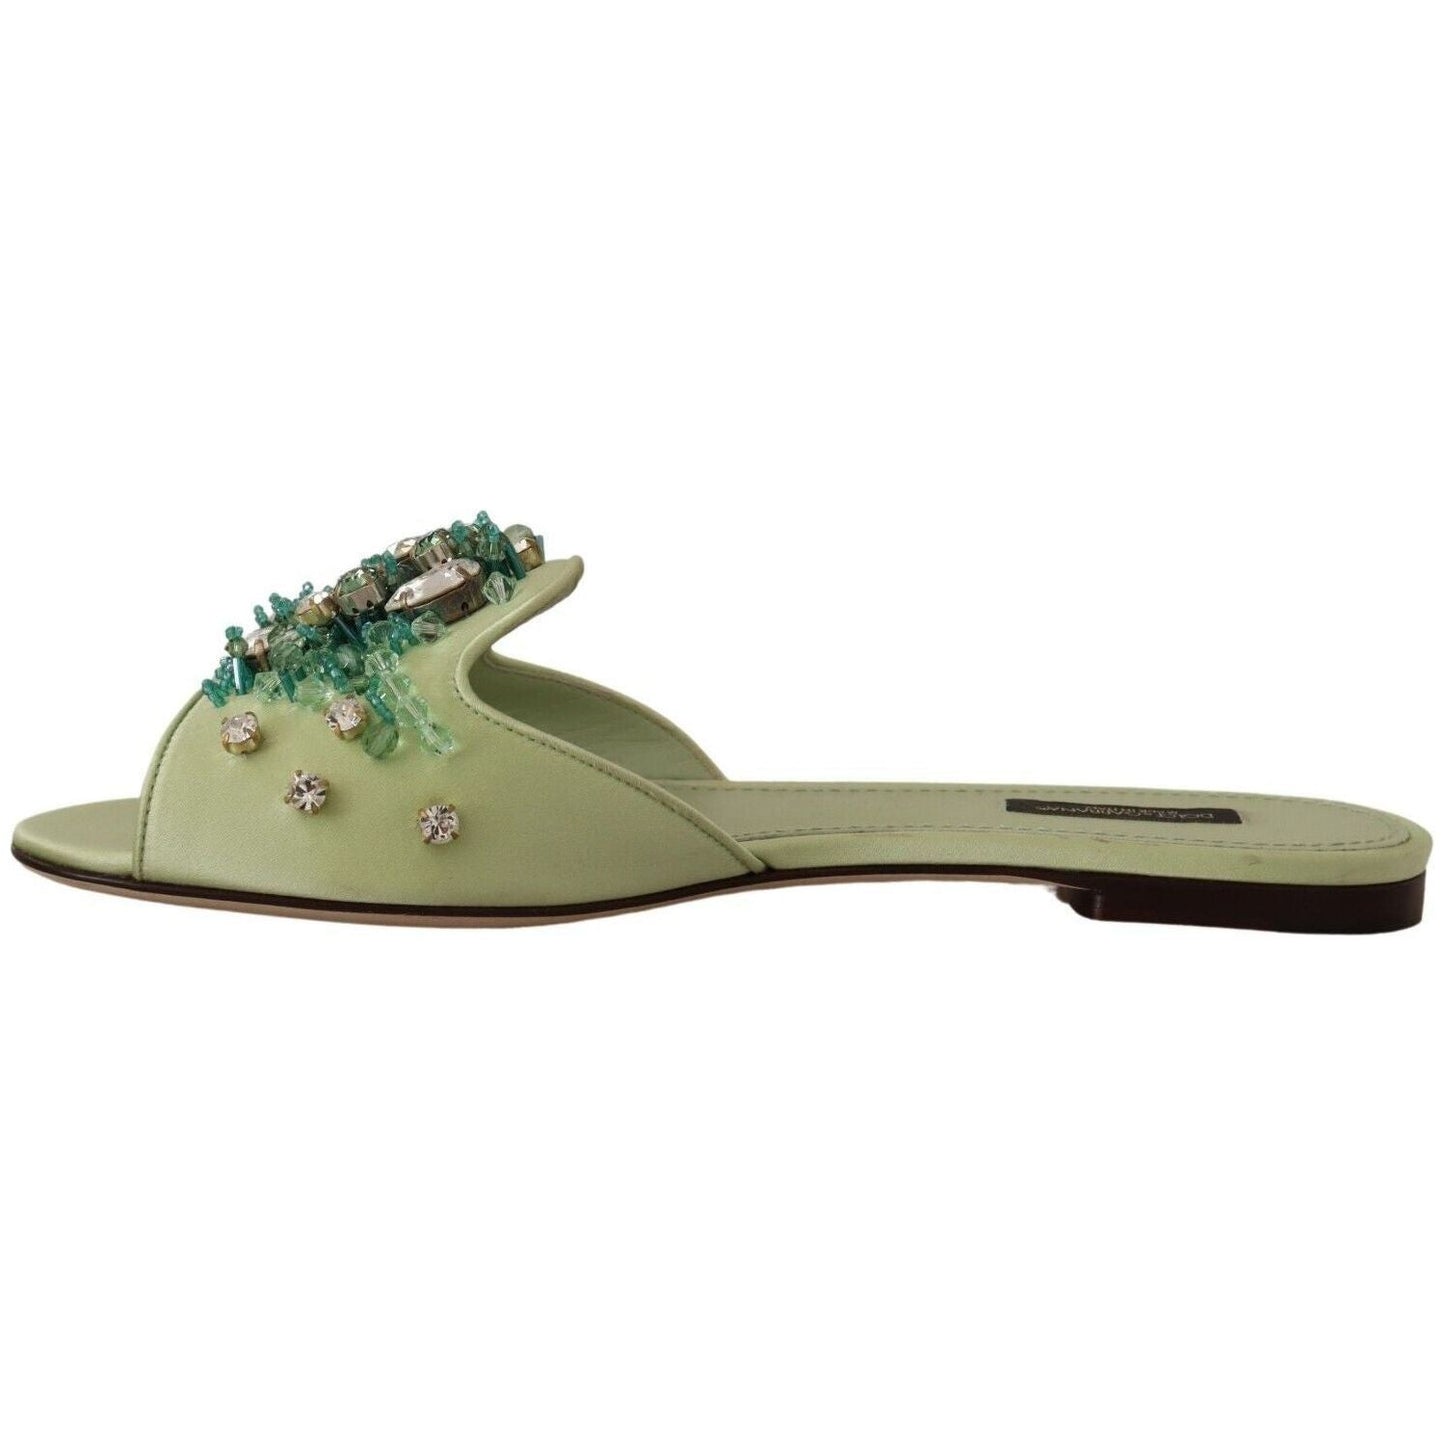 Dolce & Gabbana Elegant Crystal-Embellished Green Leather Slides green-leather-crystals-slides-women-flats-shoes s-l1600-4-83-4320f2dd-676_84ab42b0-5035-4128-8fdd-976bedf1c38c.jpg